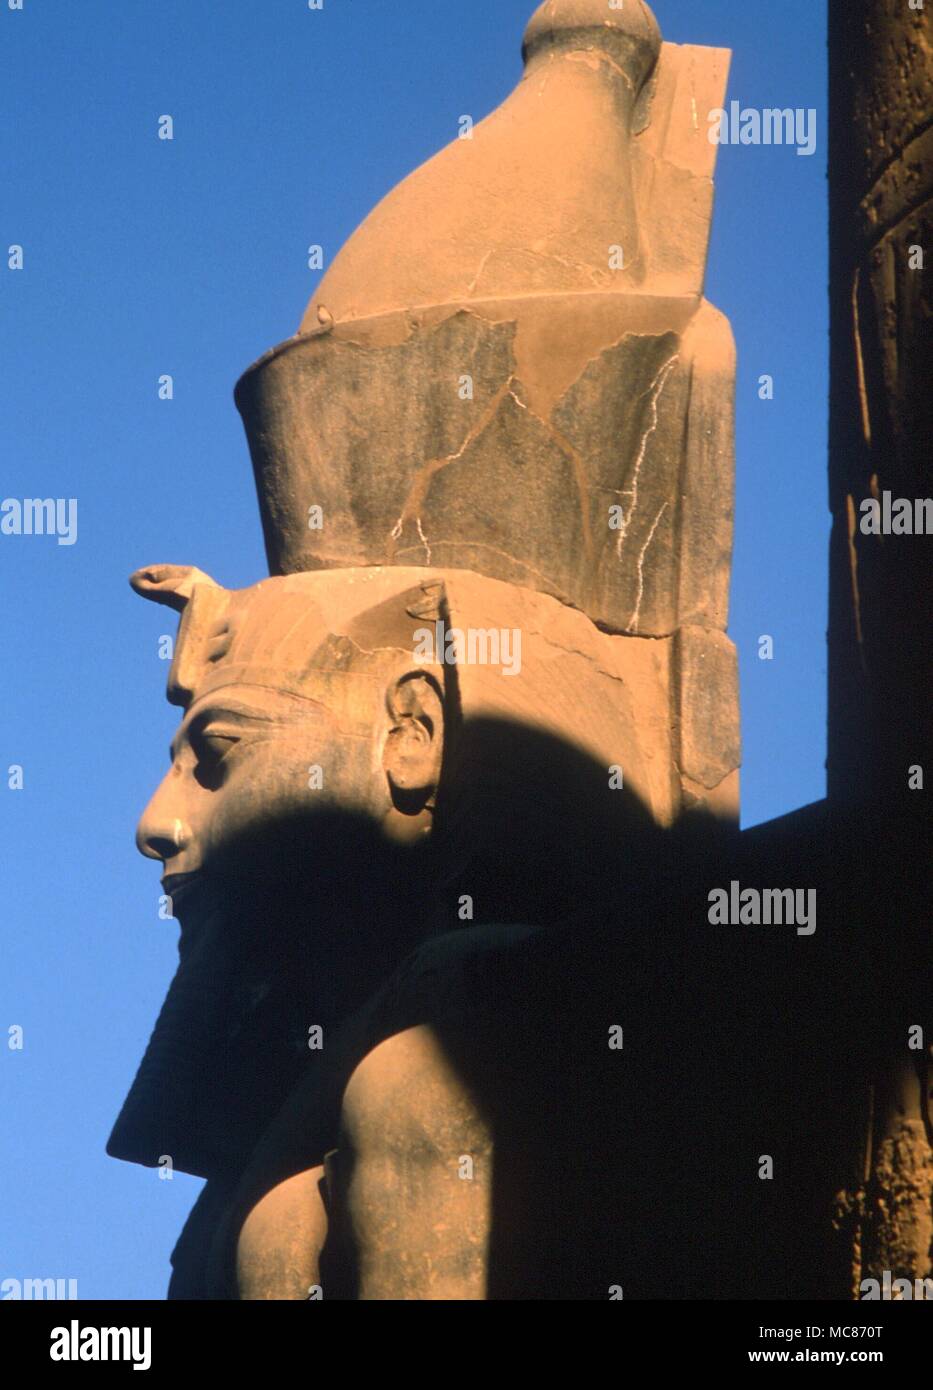 Troisième oeil - l'uraeus serpent sur le forhead (en dessous de la tête sacrée prise) du pharaon égyptien représente les rachetés ablettes, transformé en une vision plus élevée. Ramsès II colossale dans le temple de Louxor Banque D'Images